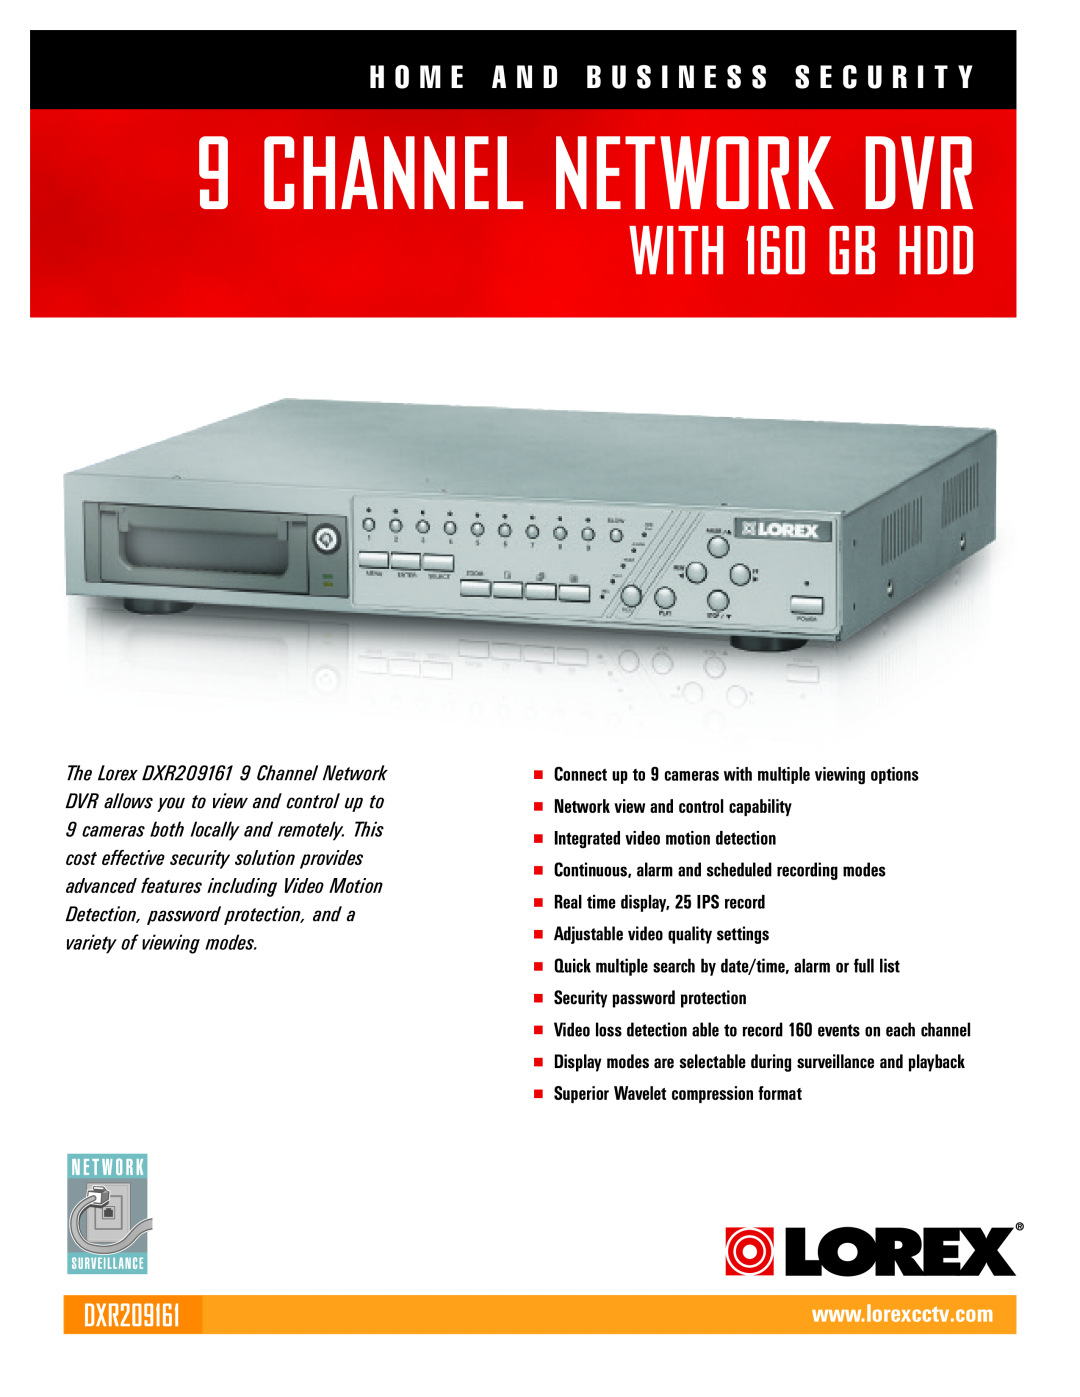 LOREX Technology DXR209161 manual H O M E A N D B U S I N E S S S E C U R I T Y, Channel Network Dvr, WITH 160 GB HDD 